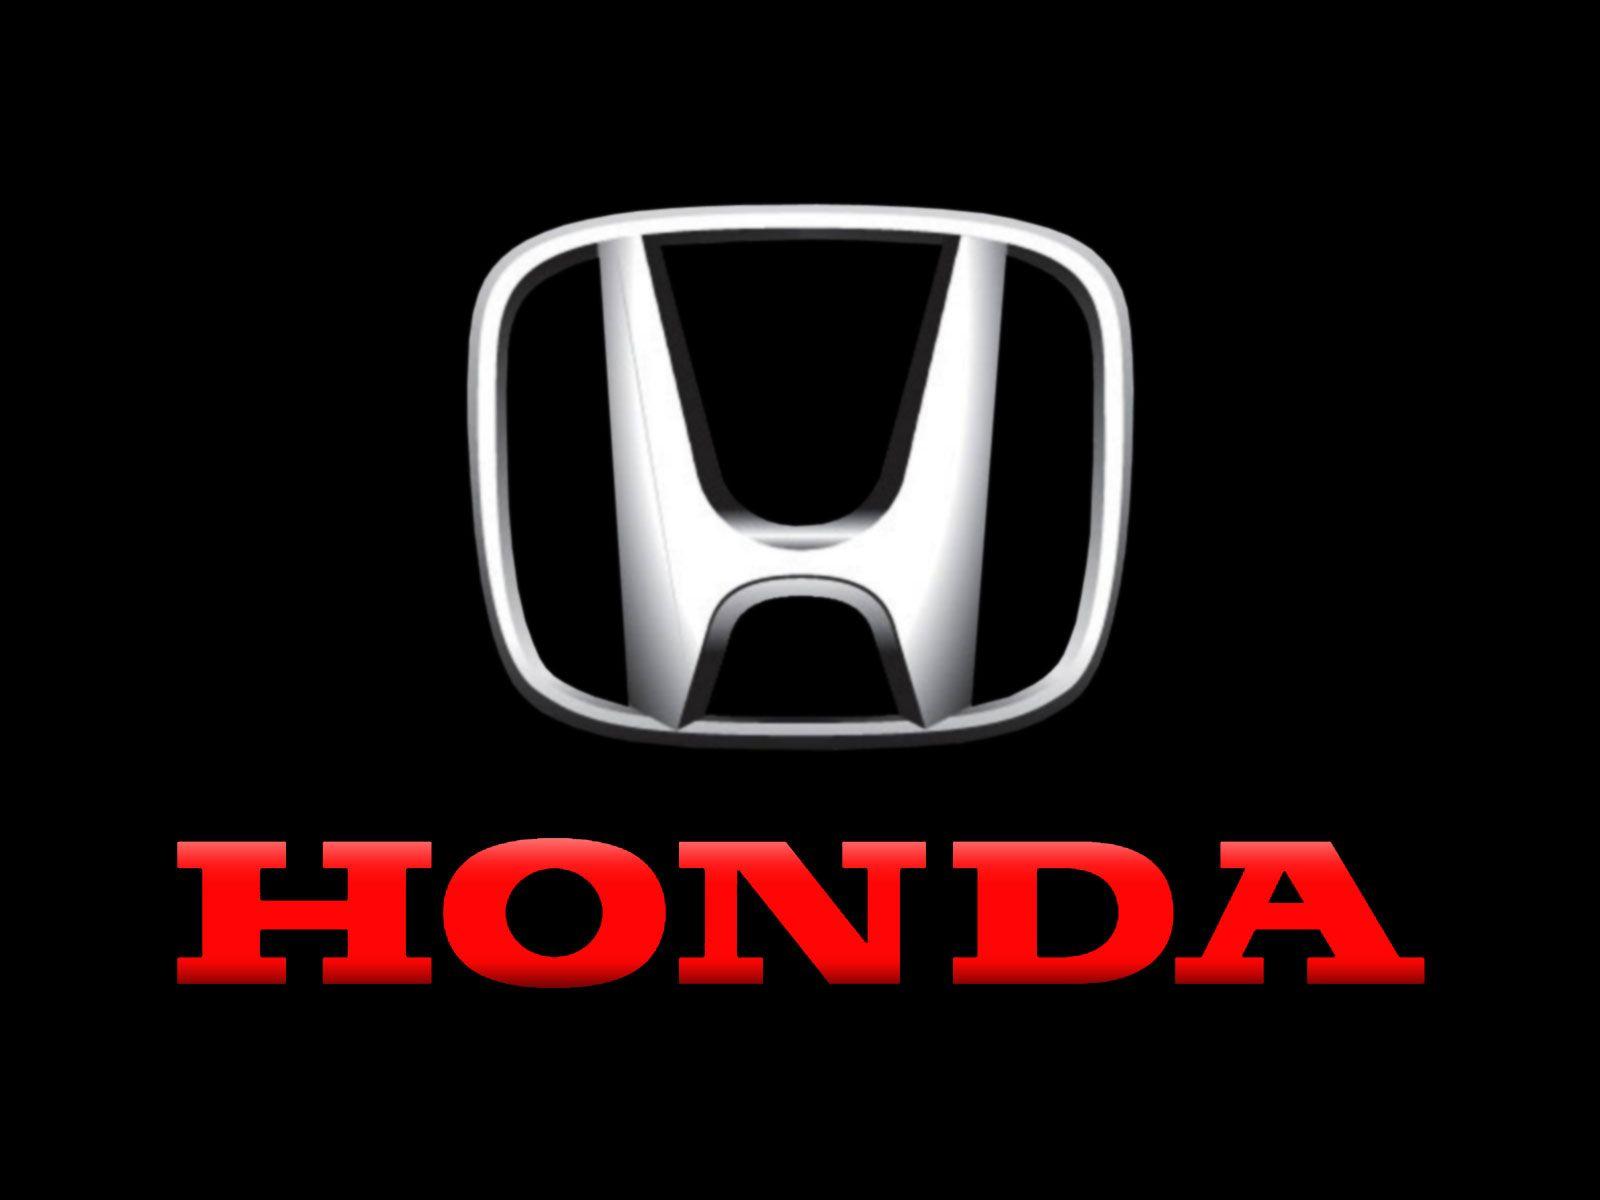 Honda Auto Logo - Honda Logo, Honda Car Symbol Meaning and History | Car Brand Names.com